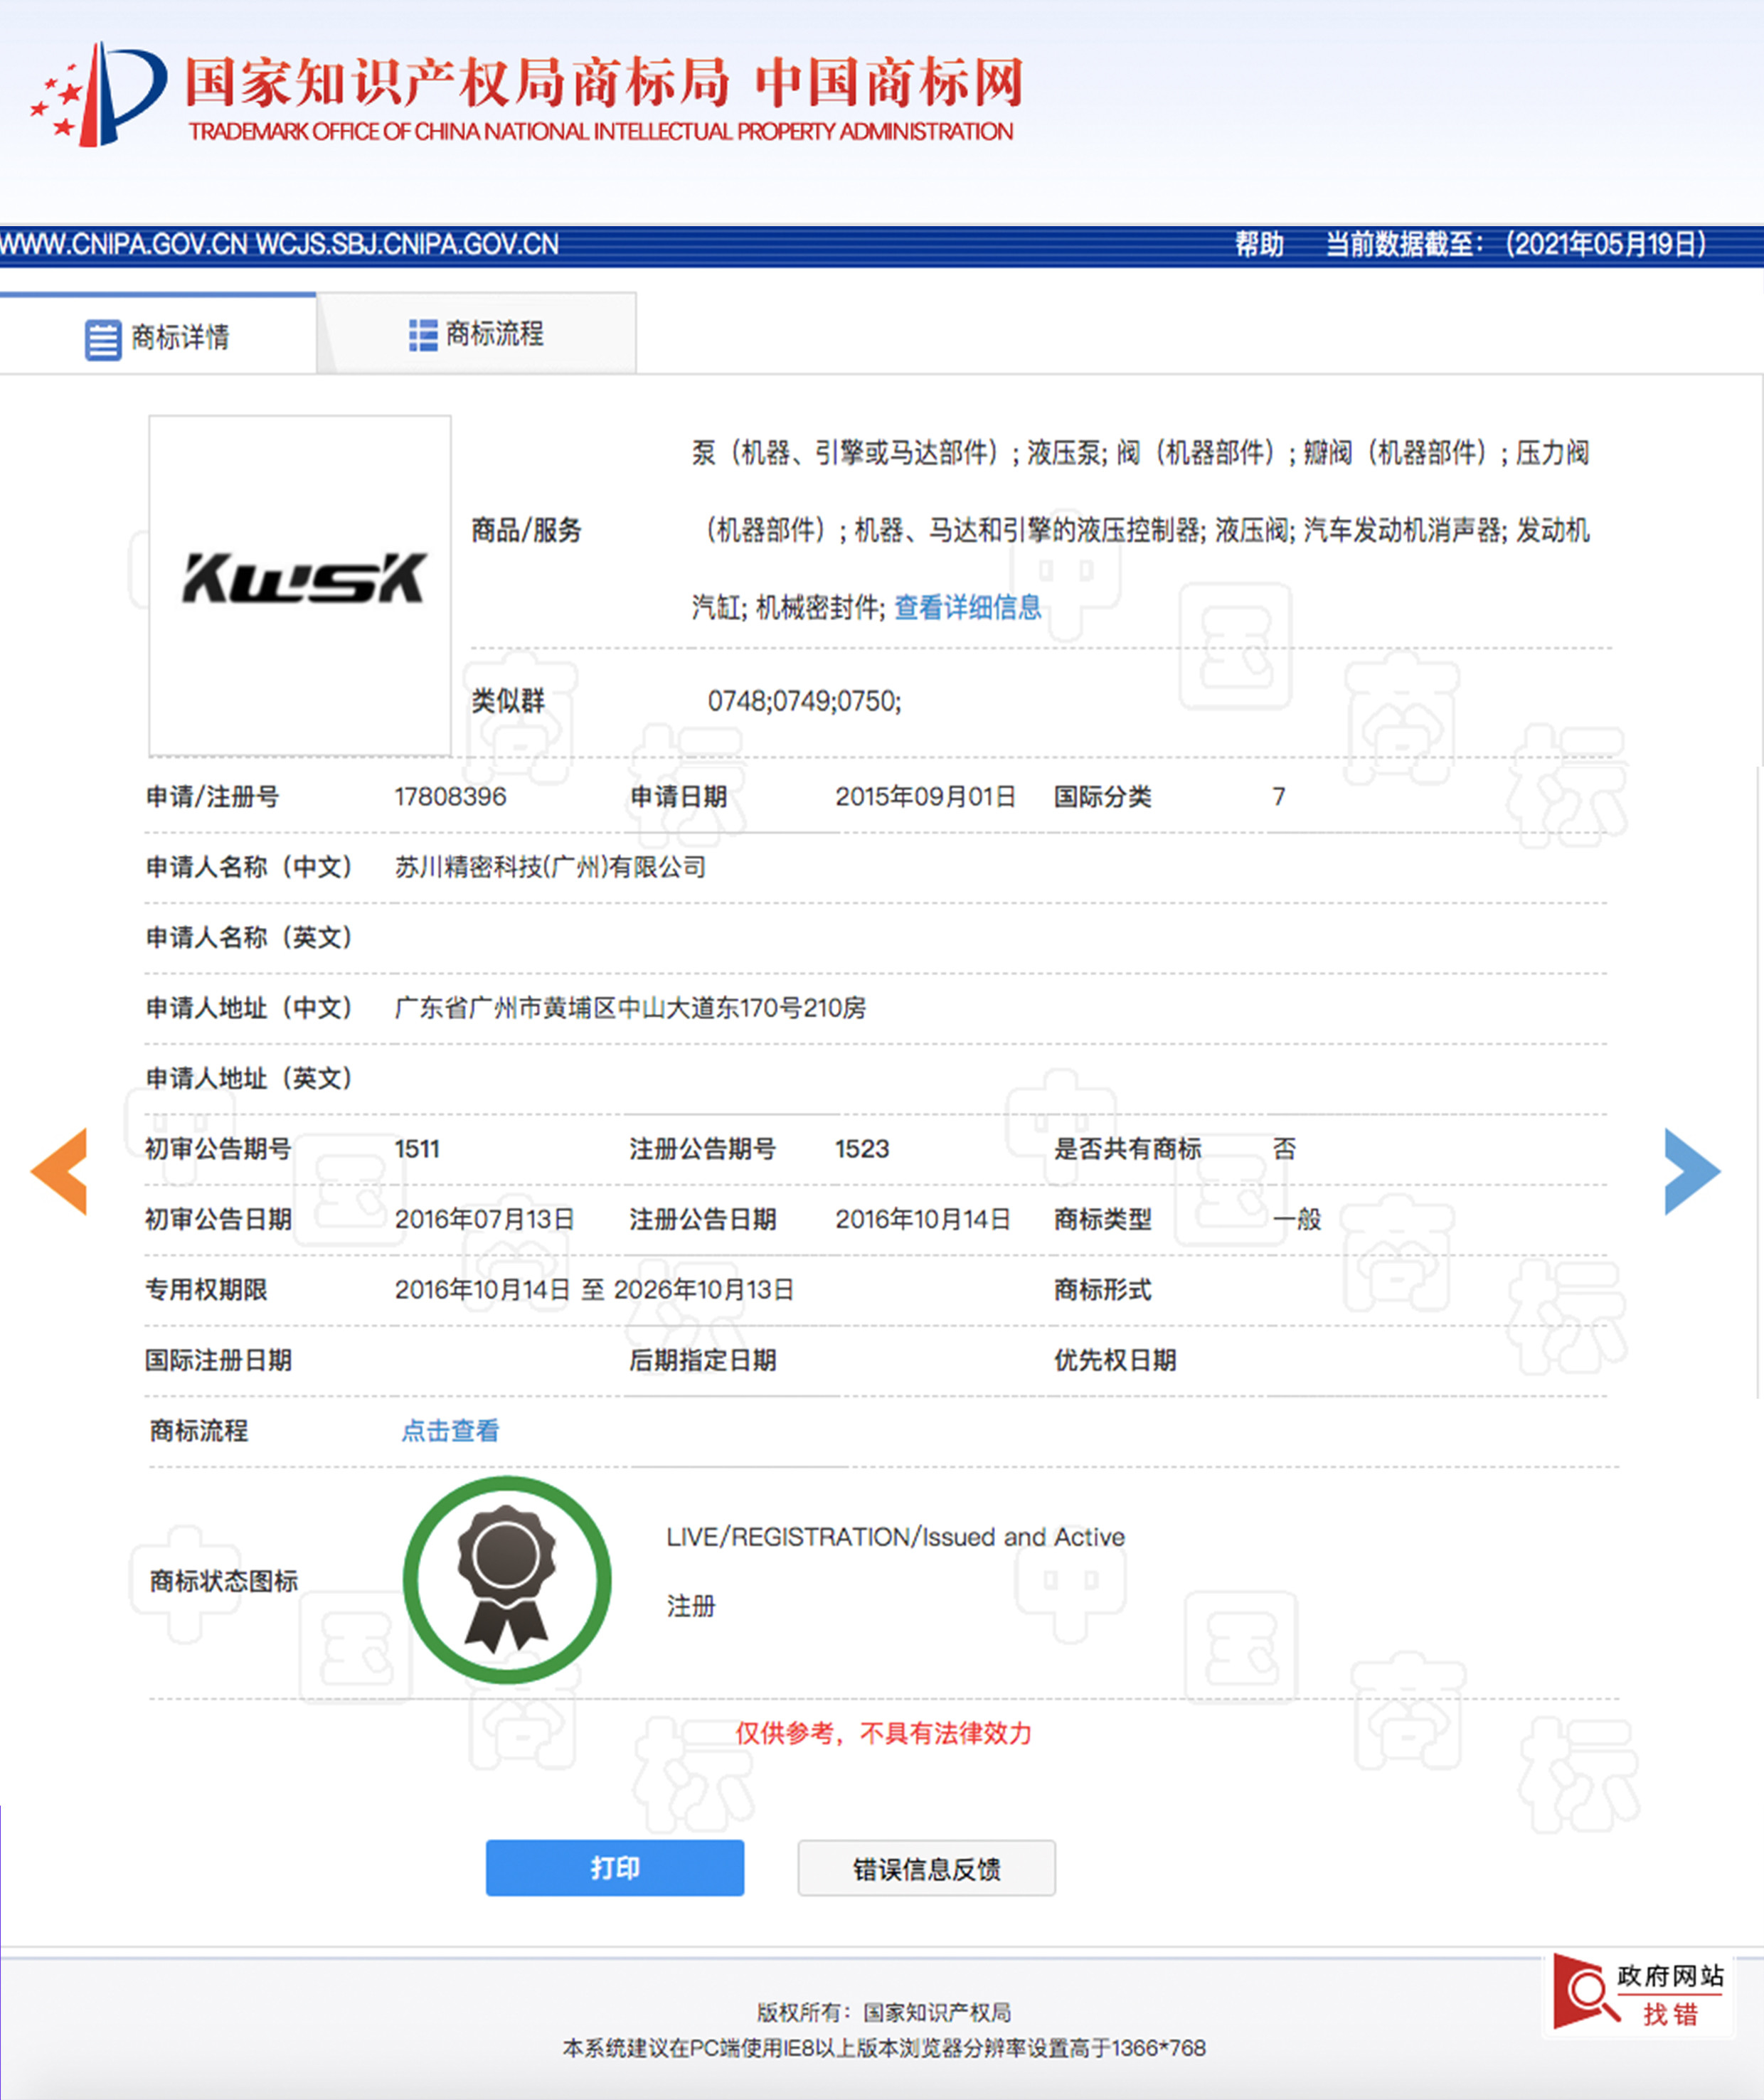 China SuChuan Precision Technology (Guangzhou) Co,. Ltd. Certification